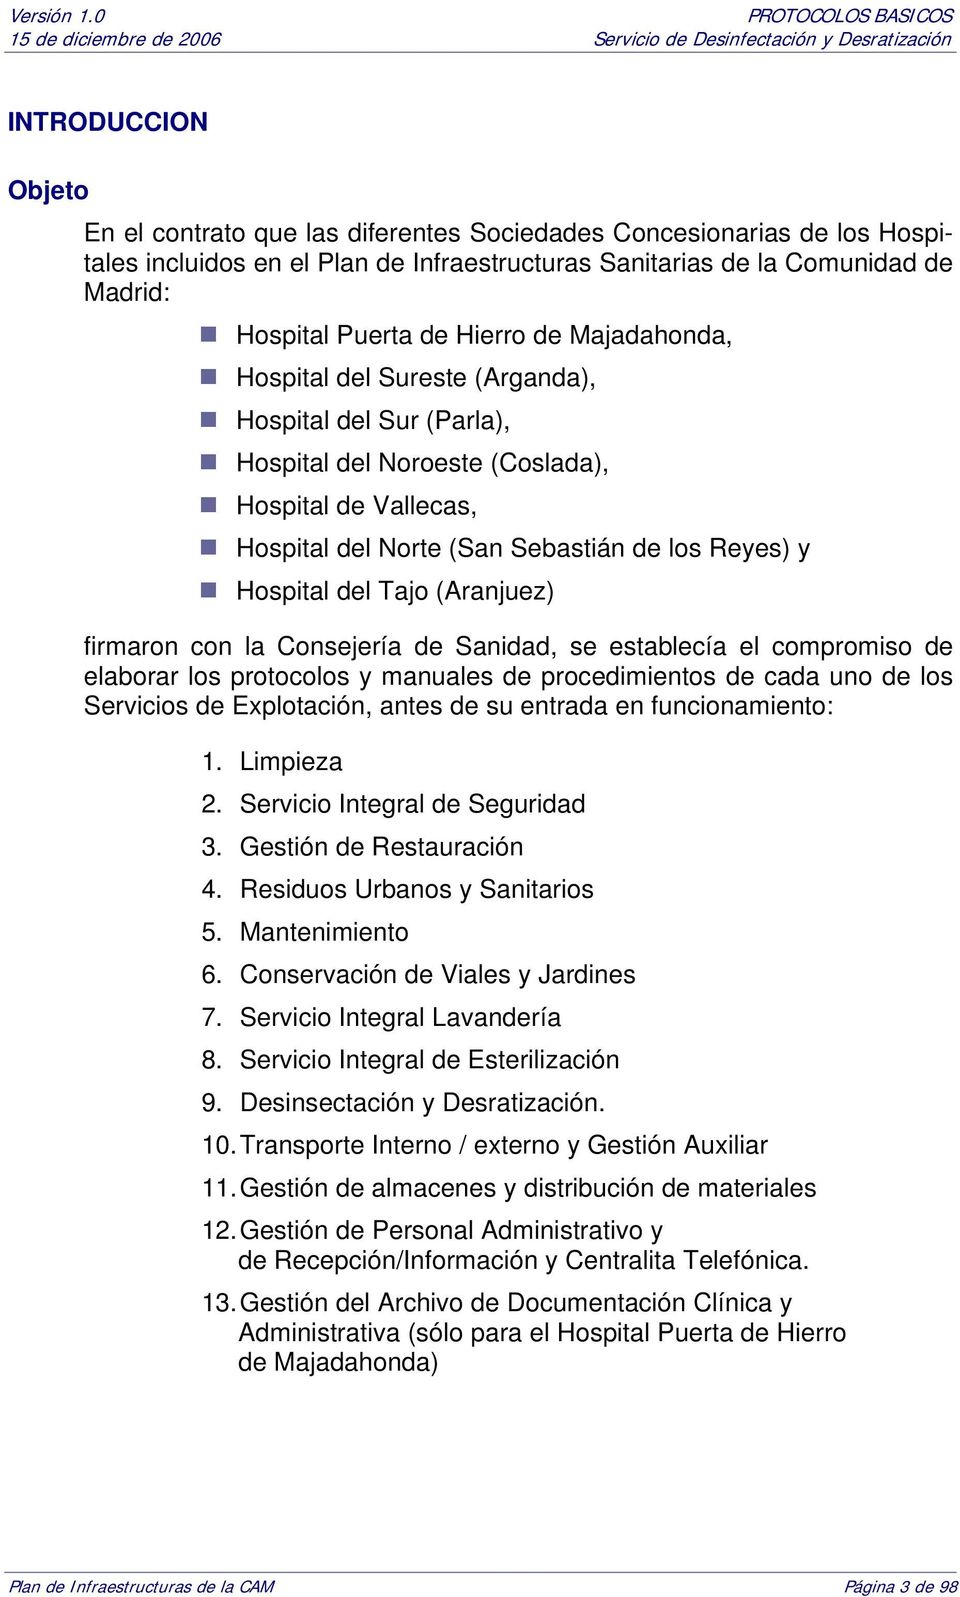 Tajo (Aranjuez) firmaron con la Consejería de Sanidad, se establecía el compromiso de elaborar los protocolos y manuales de procedimientos de cada uno de los Servicios de Explotación, antes de su